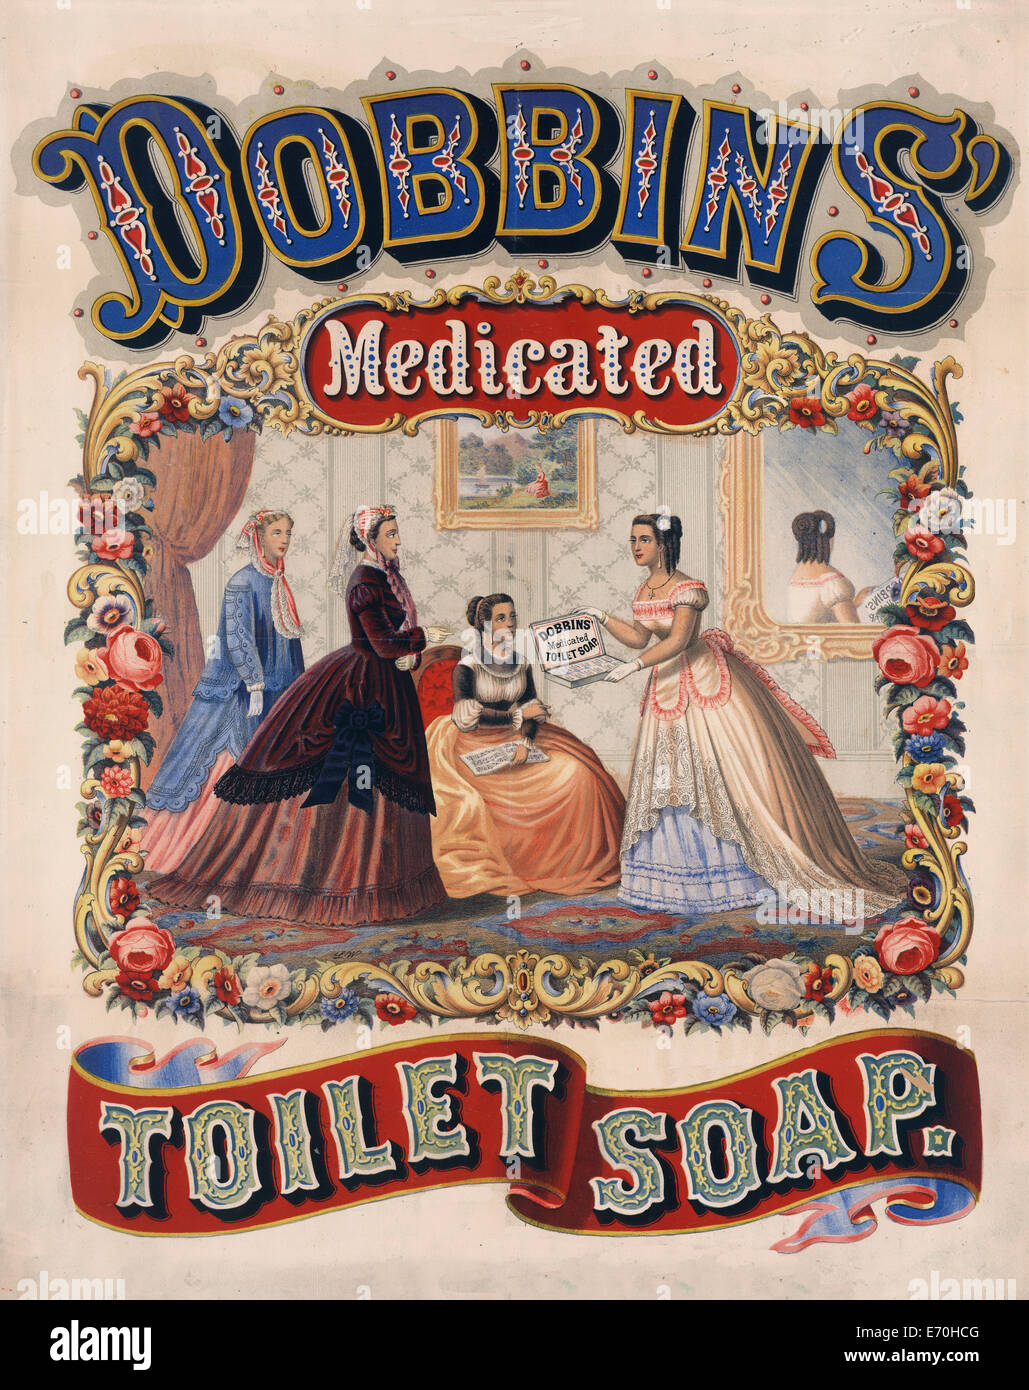 Dobbins' medicated jabón de tocador - Póster cuatro mujeres bien vestidas  en un salón, uno de ellos mantiene abierto un cuadro de 'Dobbins' Medicated  jabón de tocador." Dos de las mujeres se